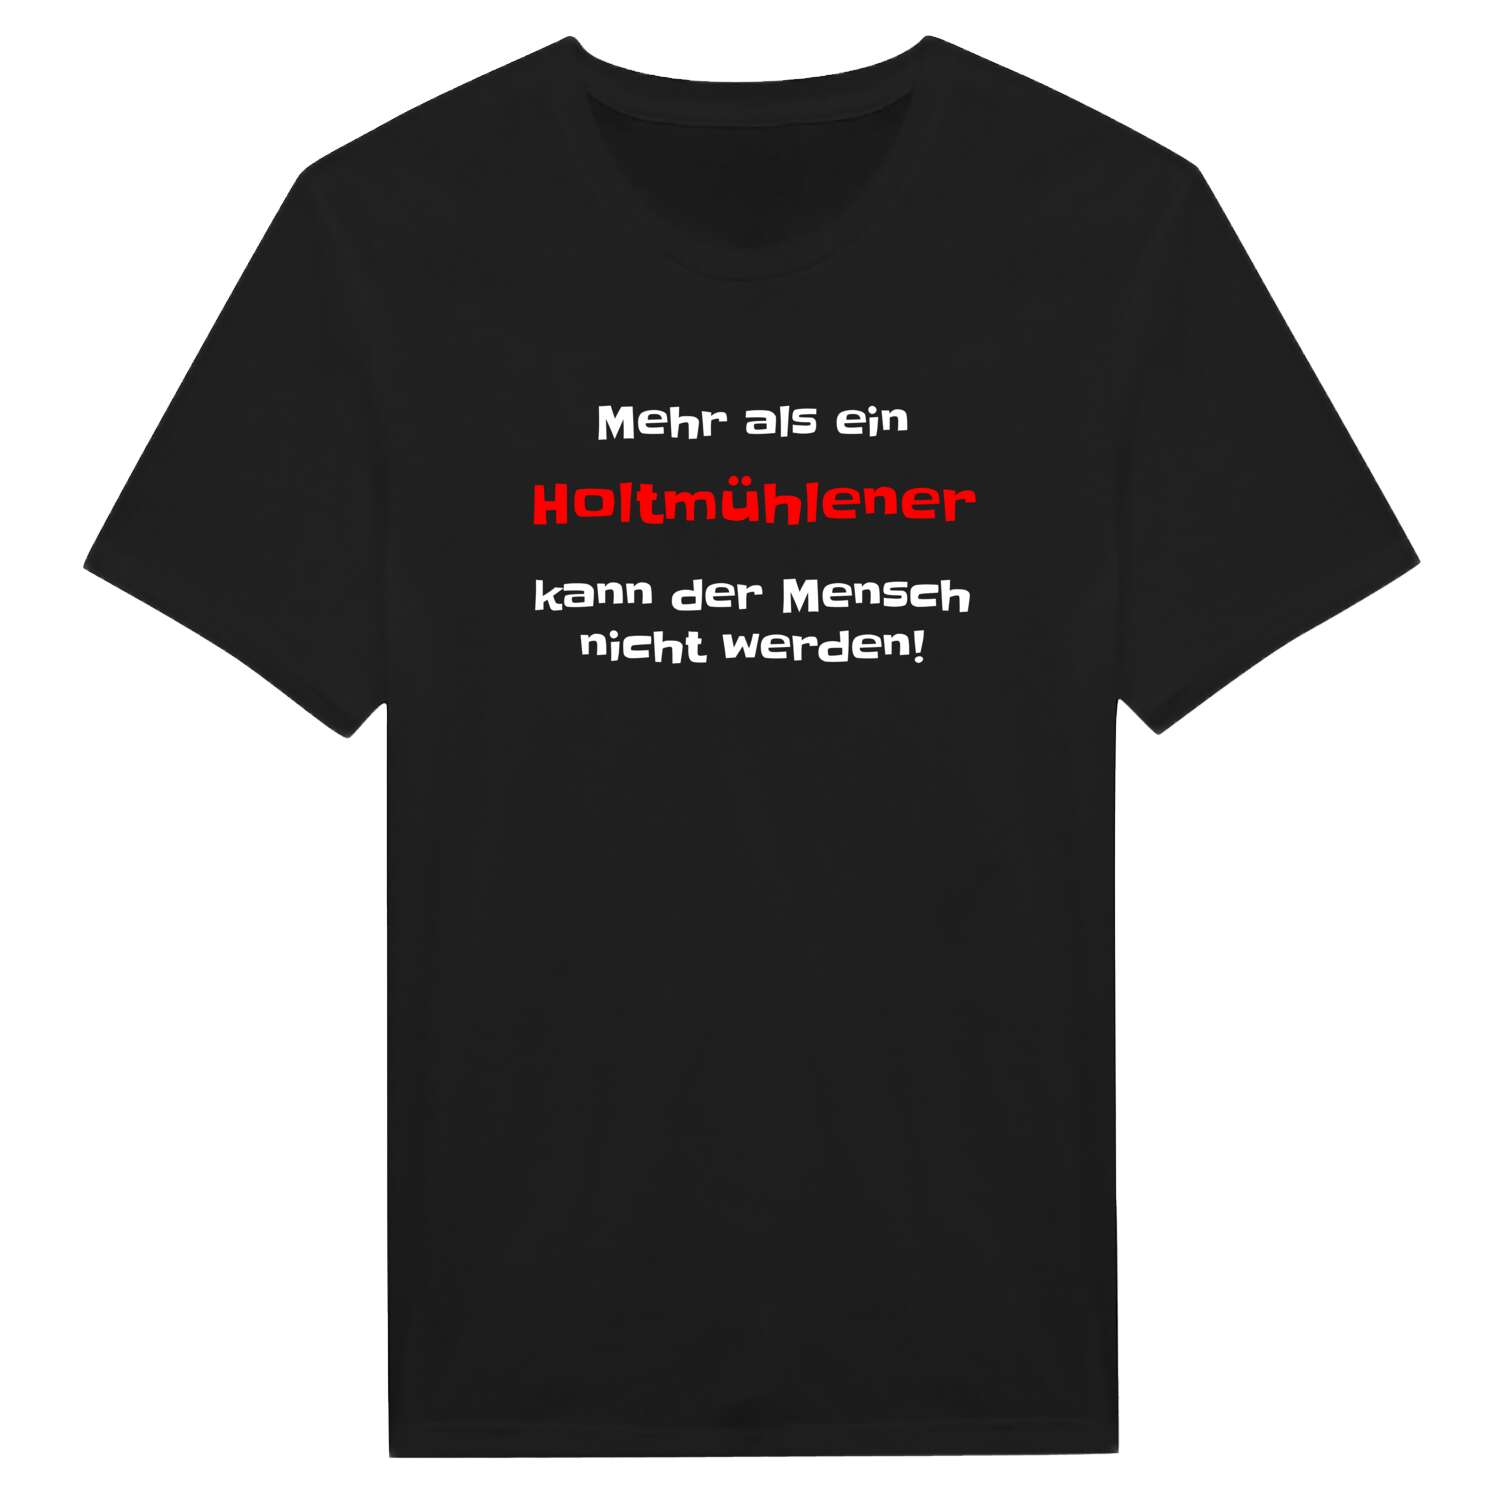 Holtmühle T-Shirt »Mehr als ein«